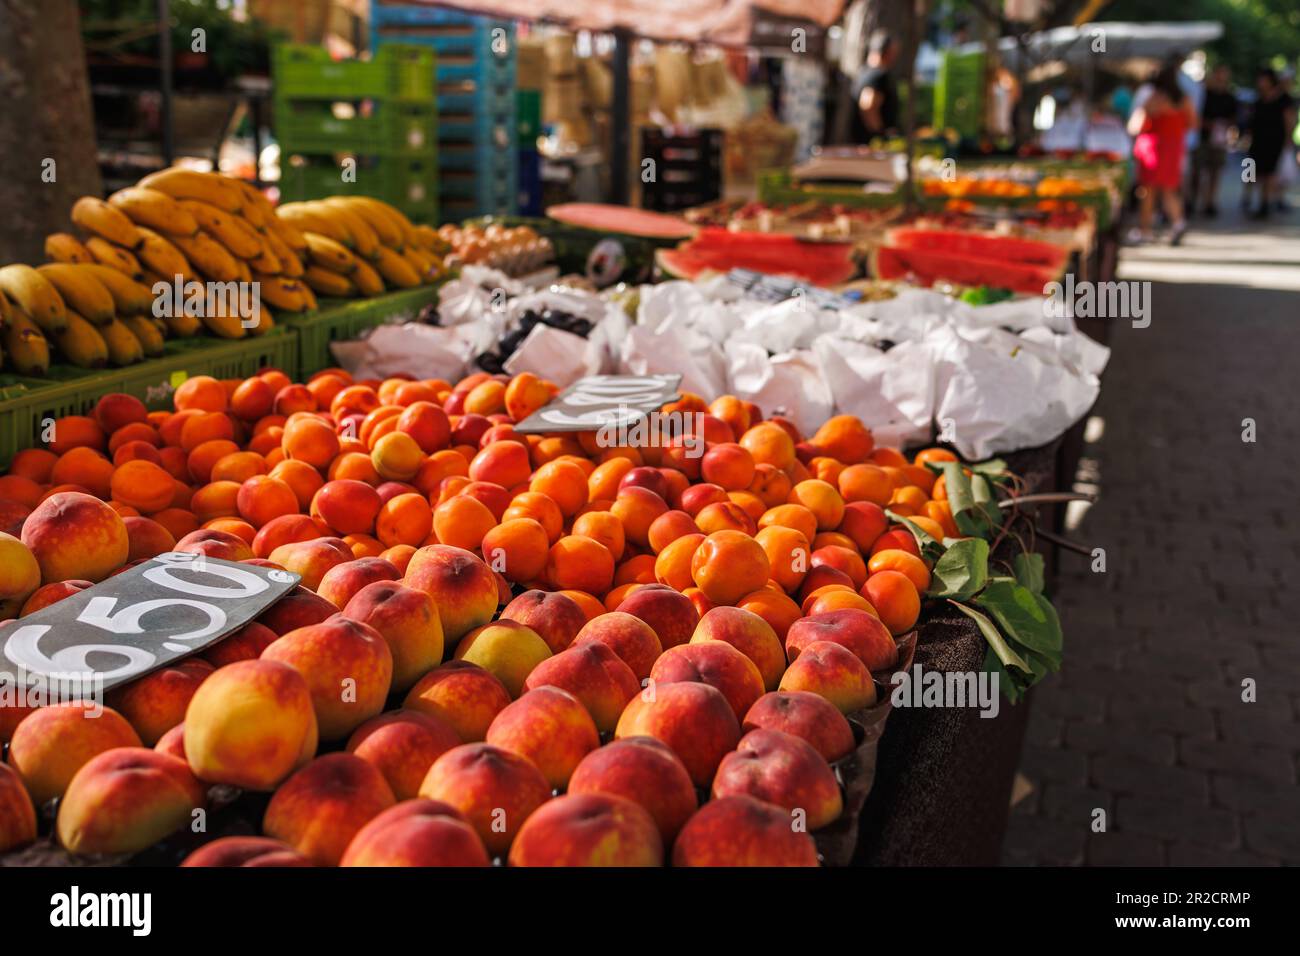 Marché aux fruits à Alcudia, Majorque. Pêche, abricot et banane à vendre sur le marché des agriculteurs Banque D'Images